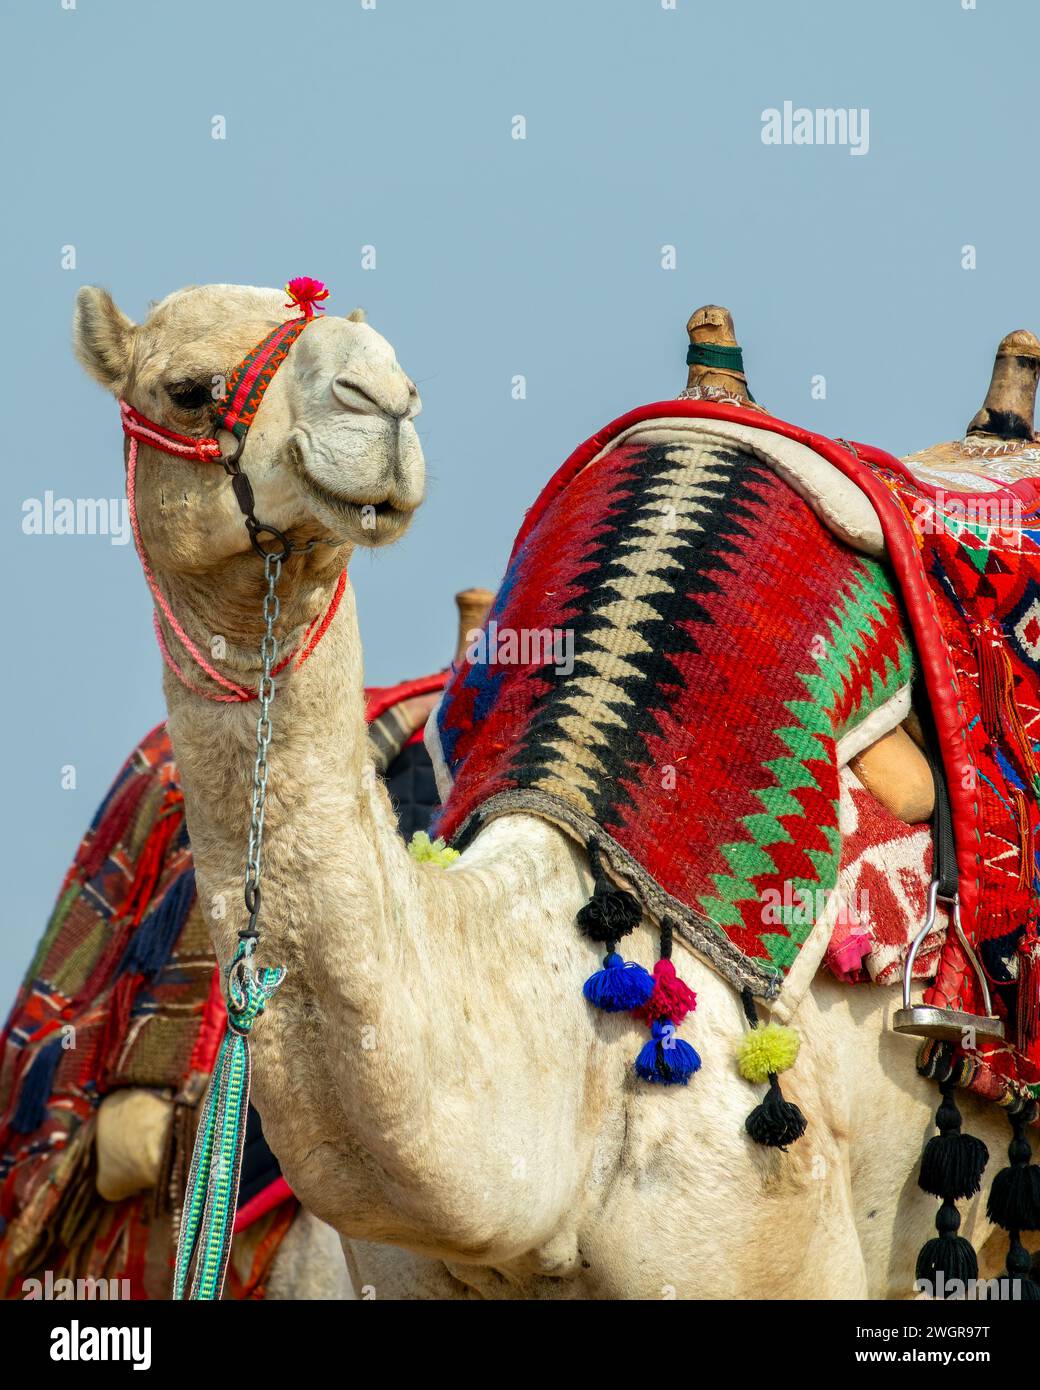 Ritratto di un cammello con una colorata imbracatura tradizionale presso le antiche piramidi egiziane di Giza, vicino al Cairo, in Egitto Foto Stock